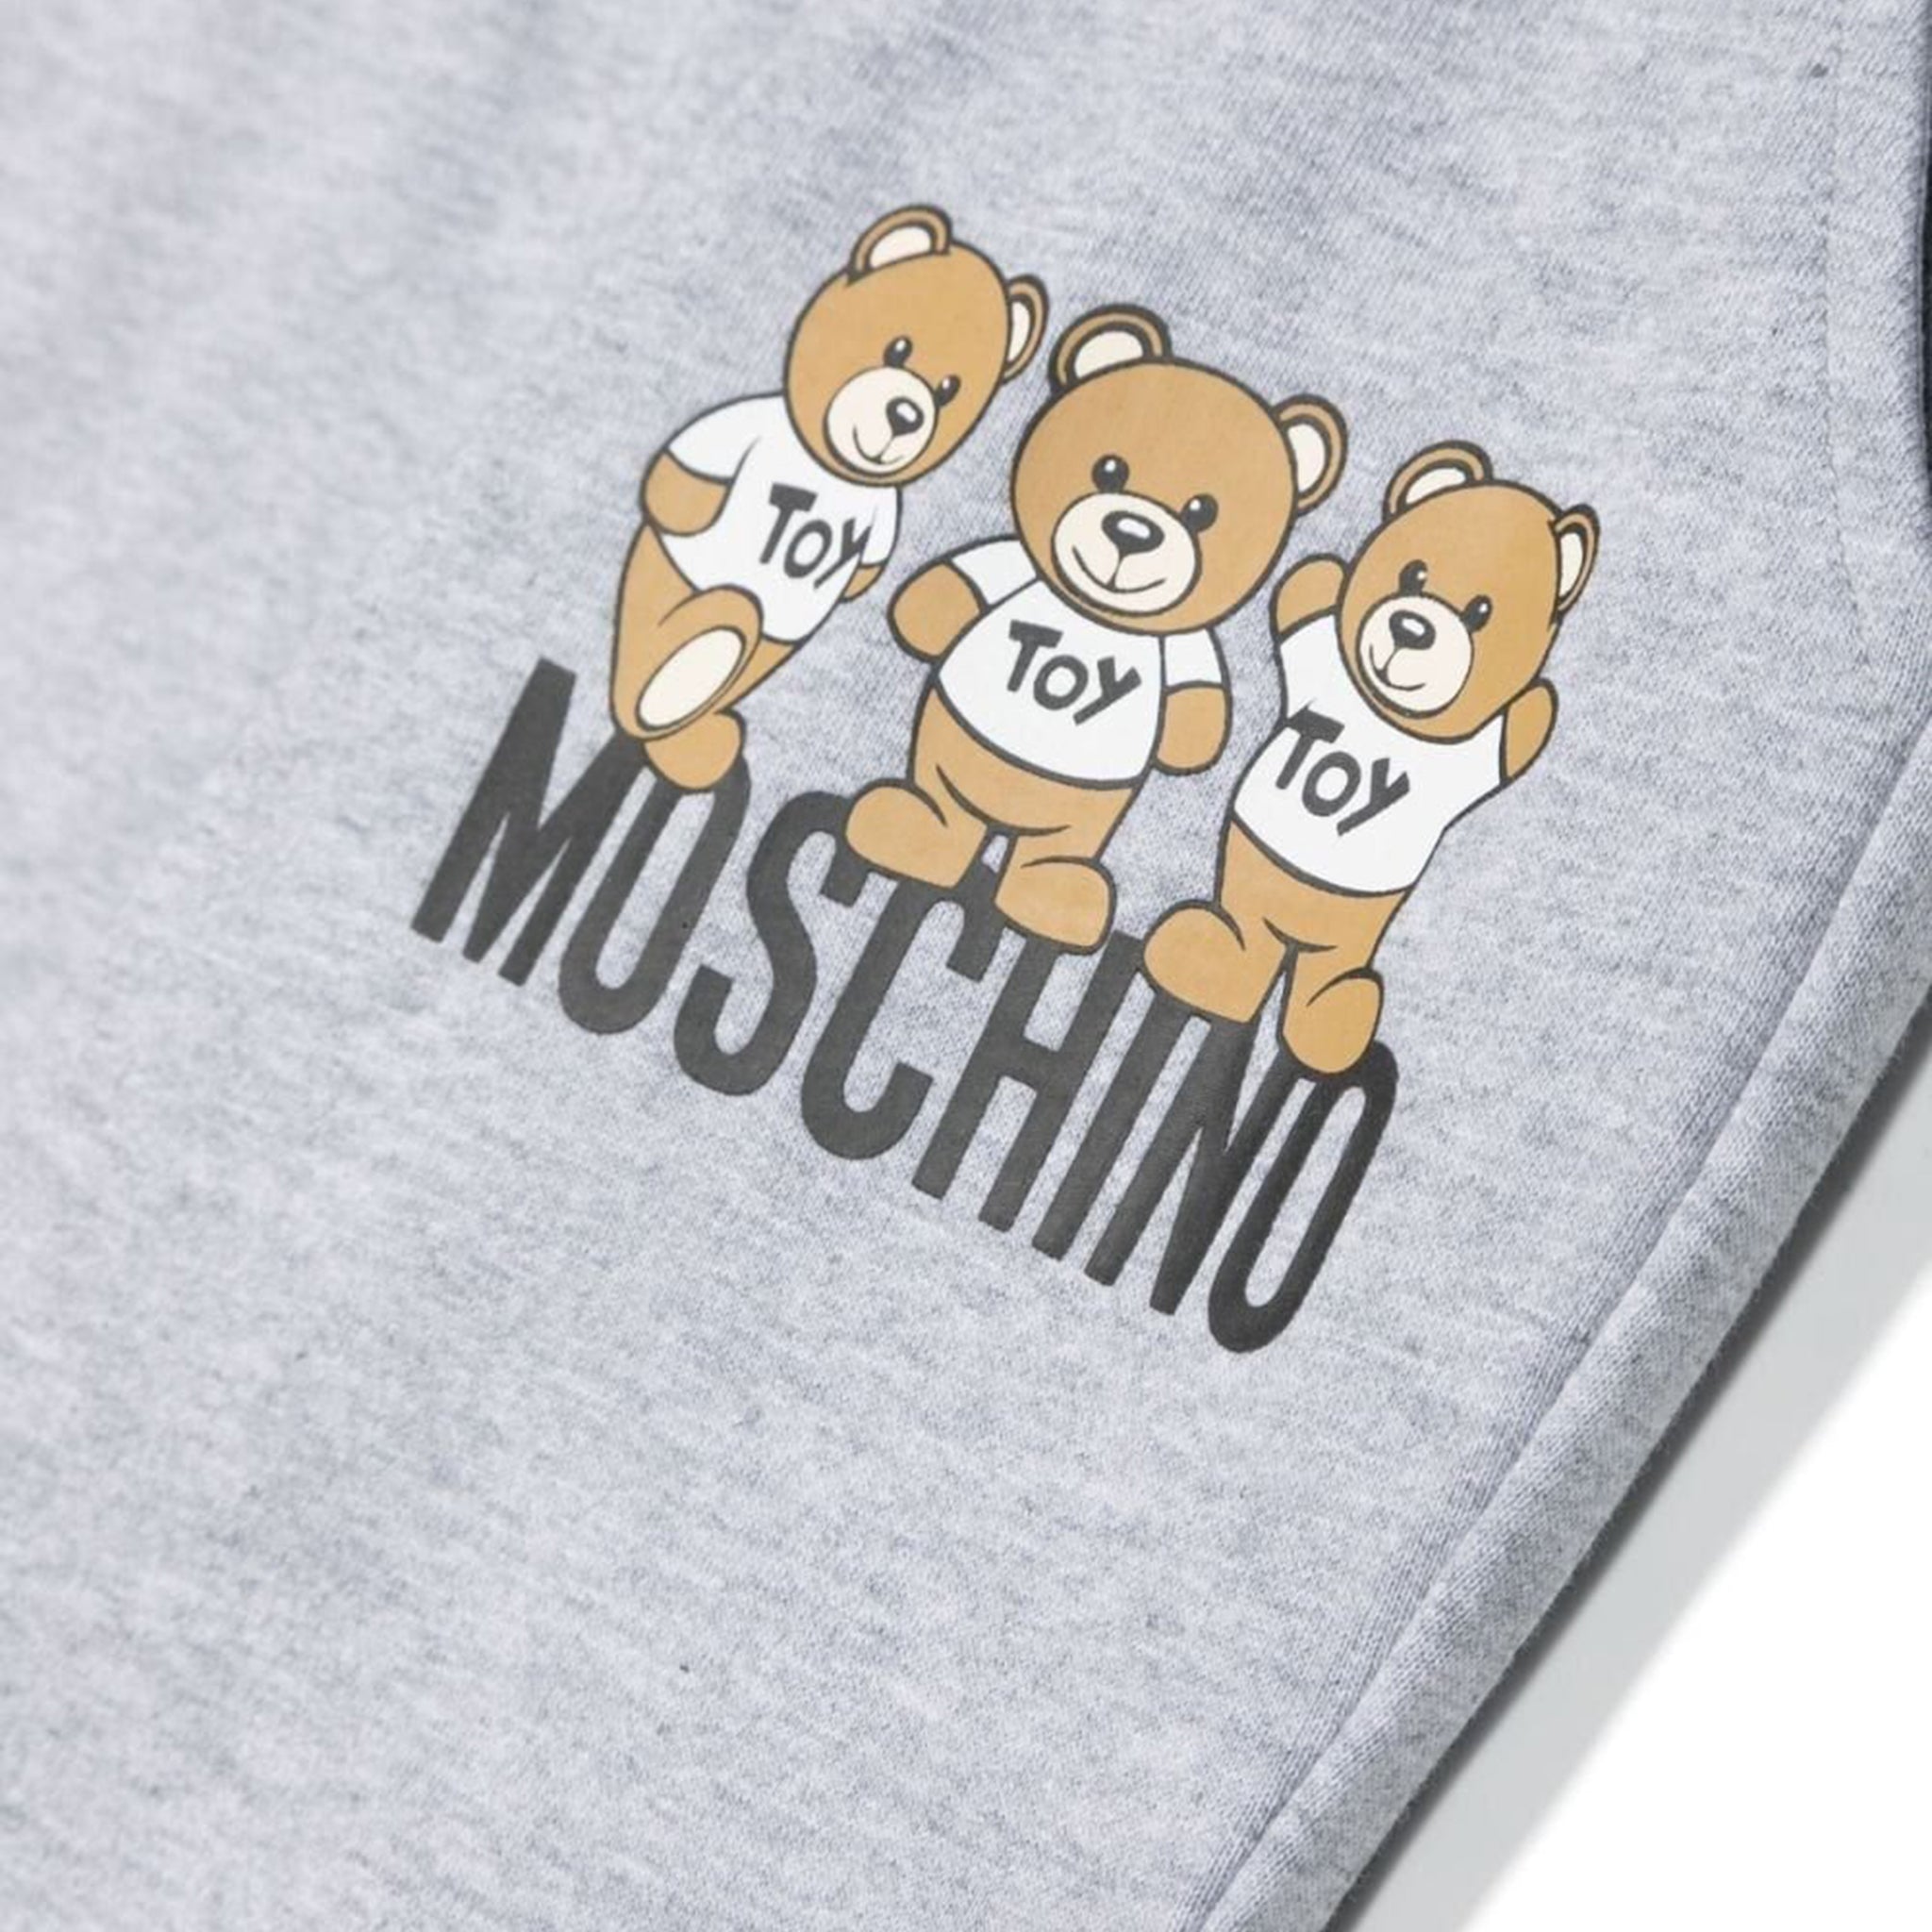 Moschino Boys Teddy Logo Joggers in Grey